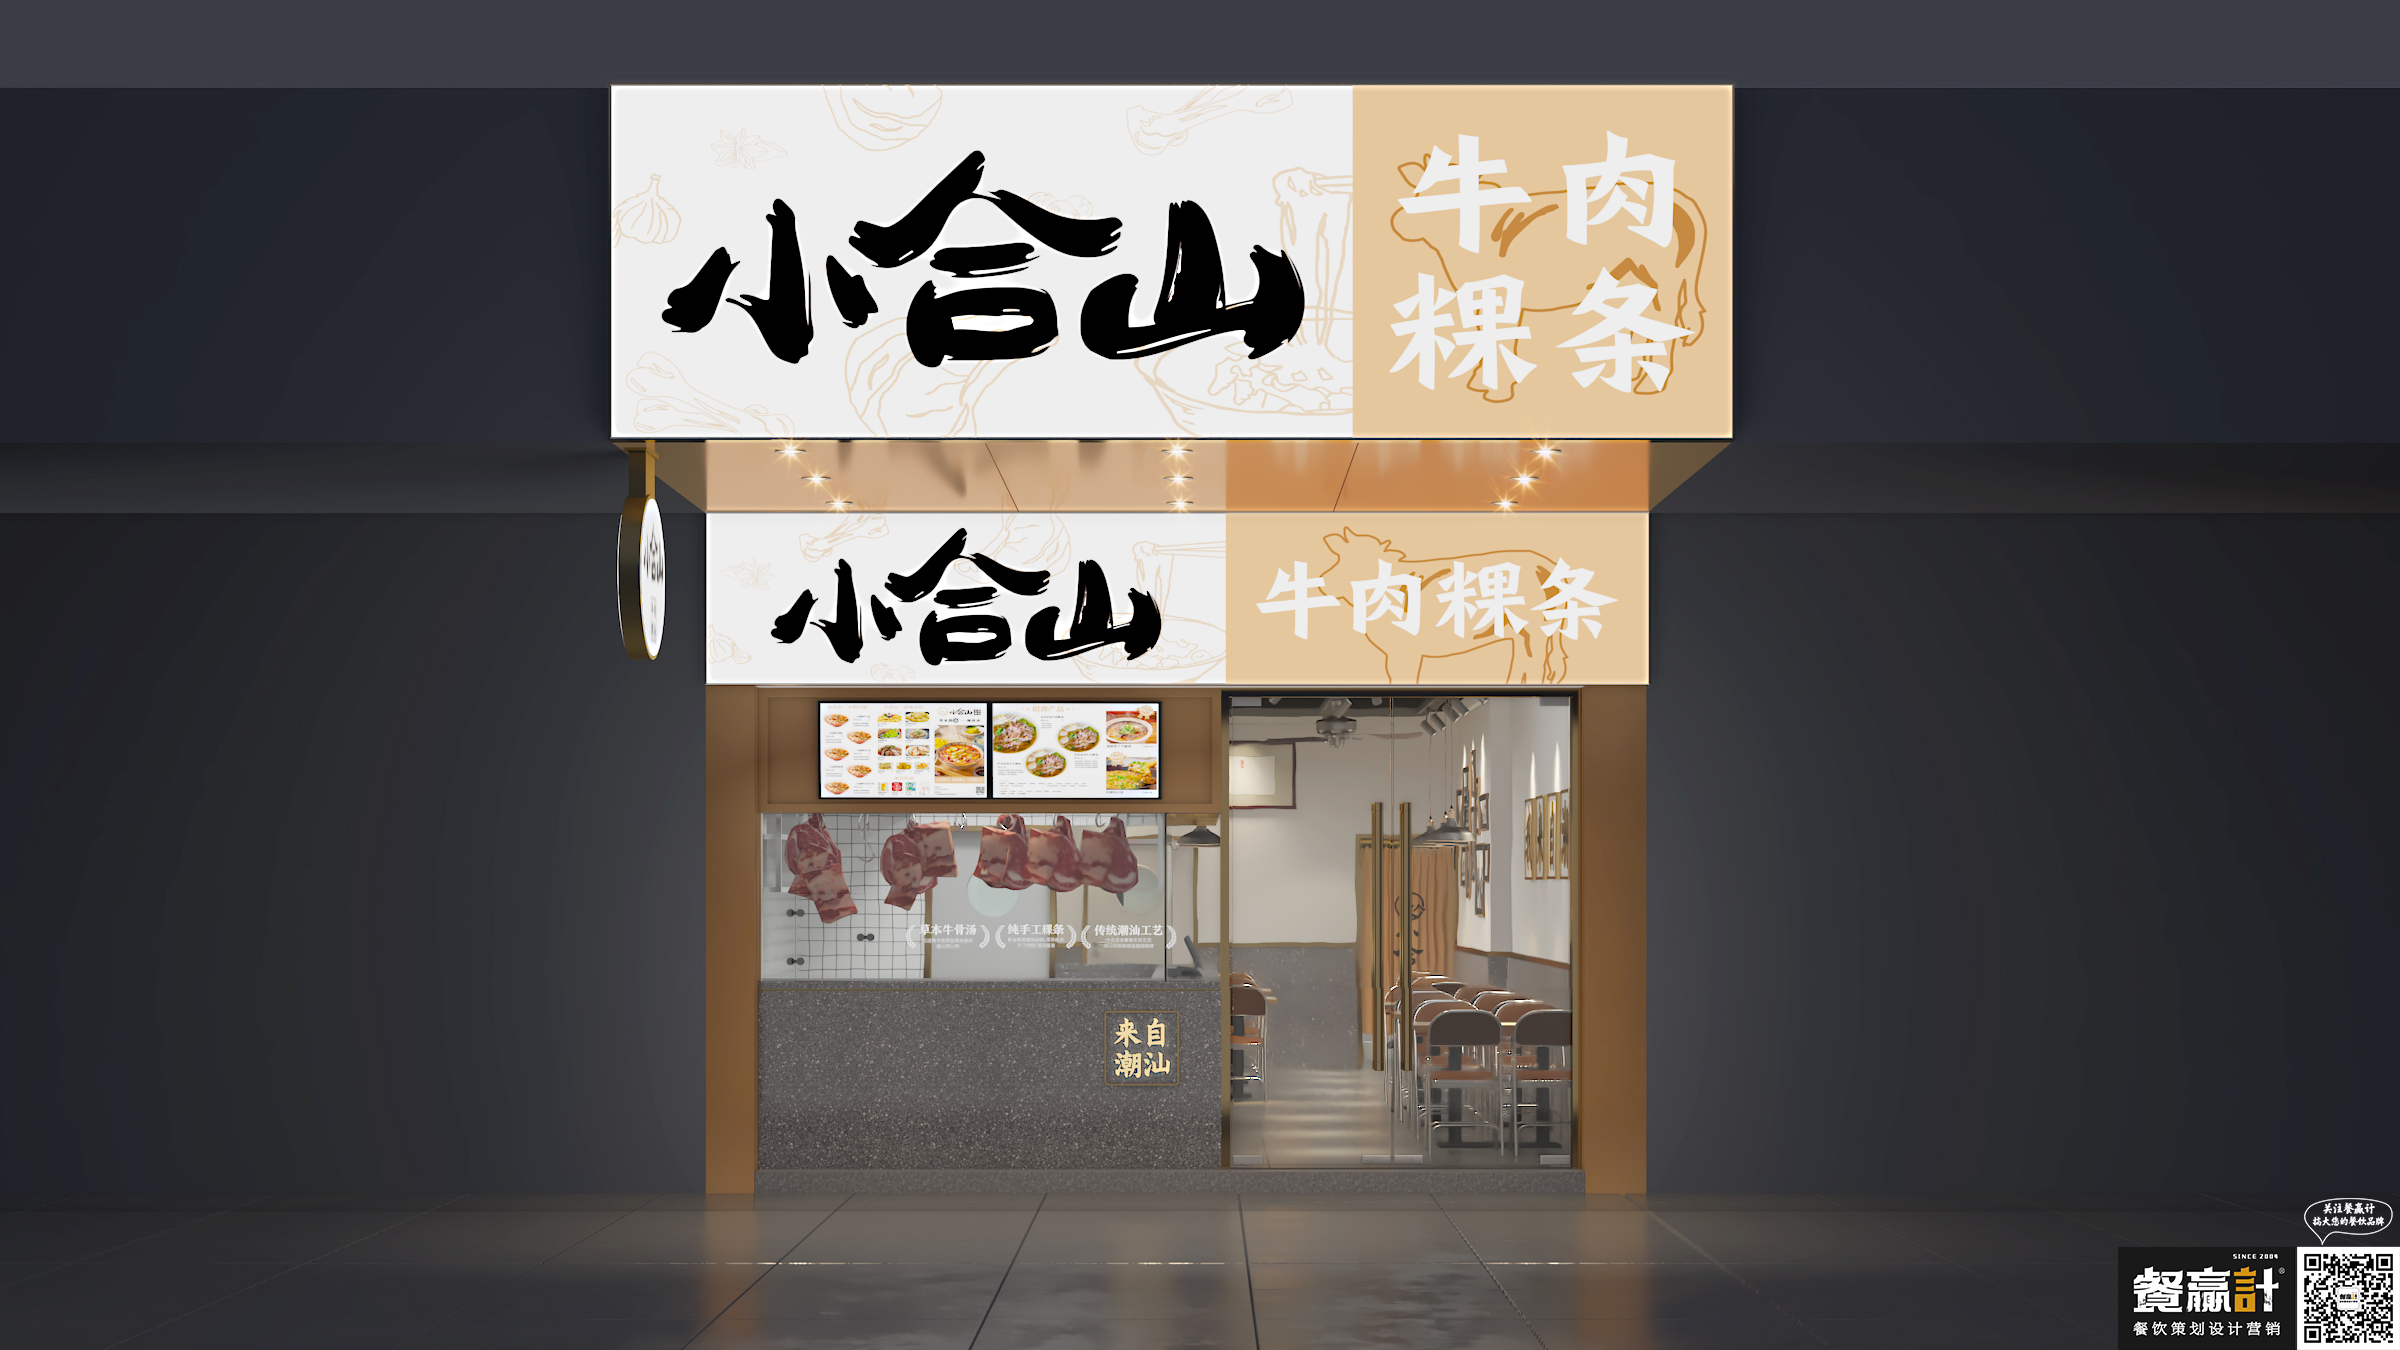 网红餐厅小合山——牛肉粿条餐厅空间设计